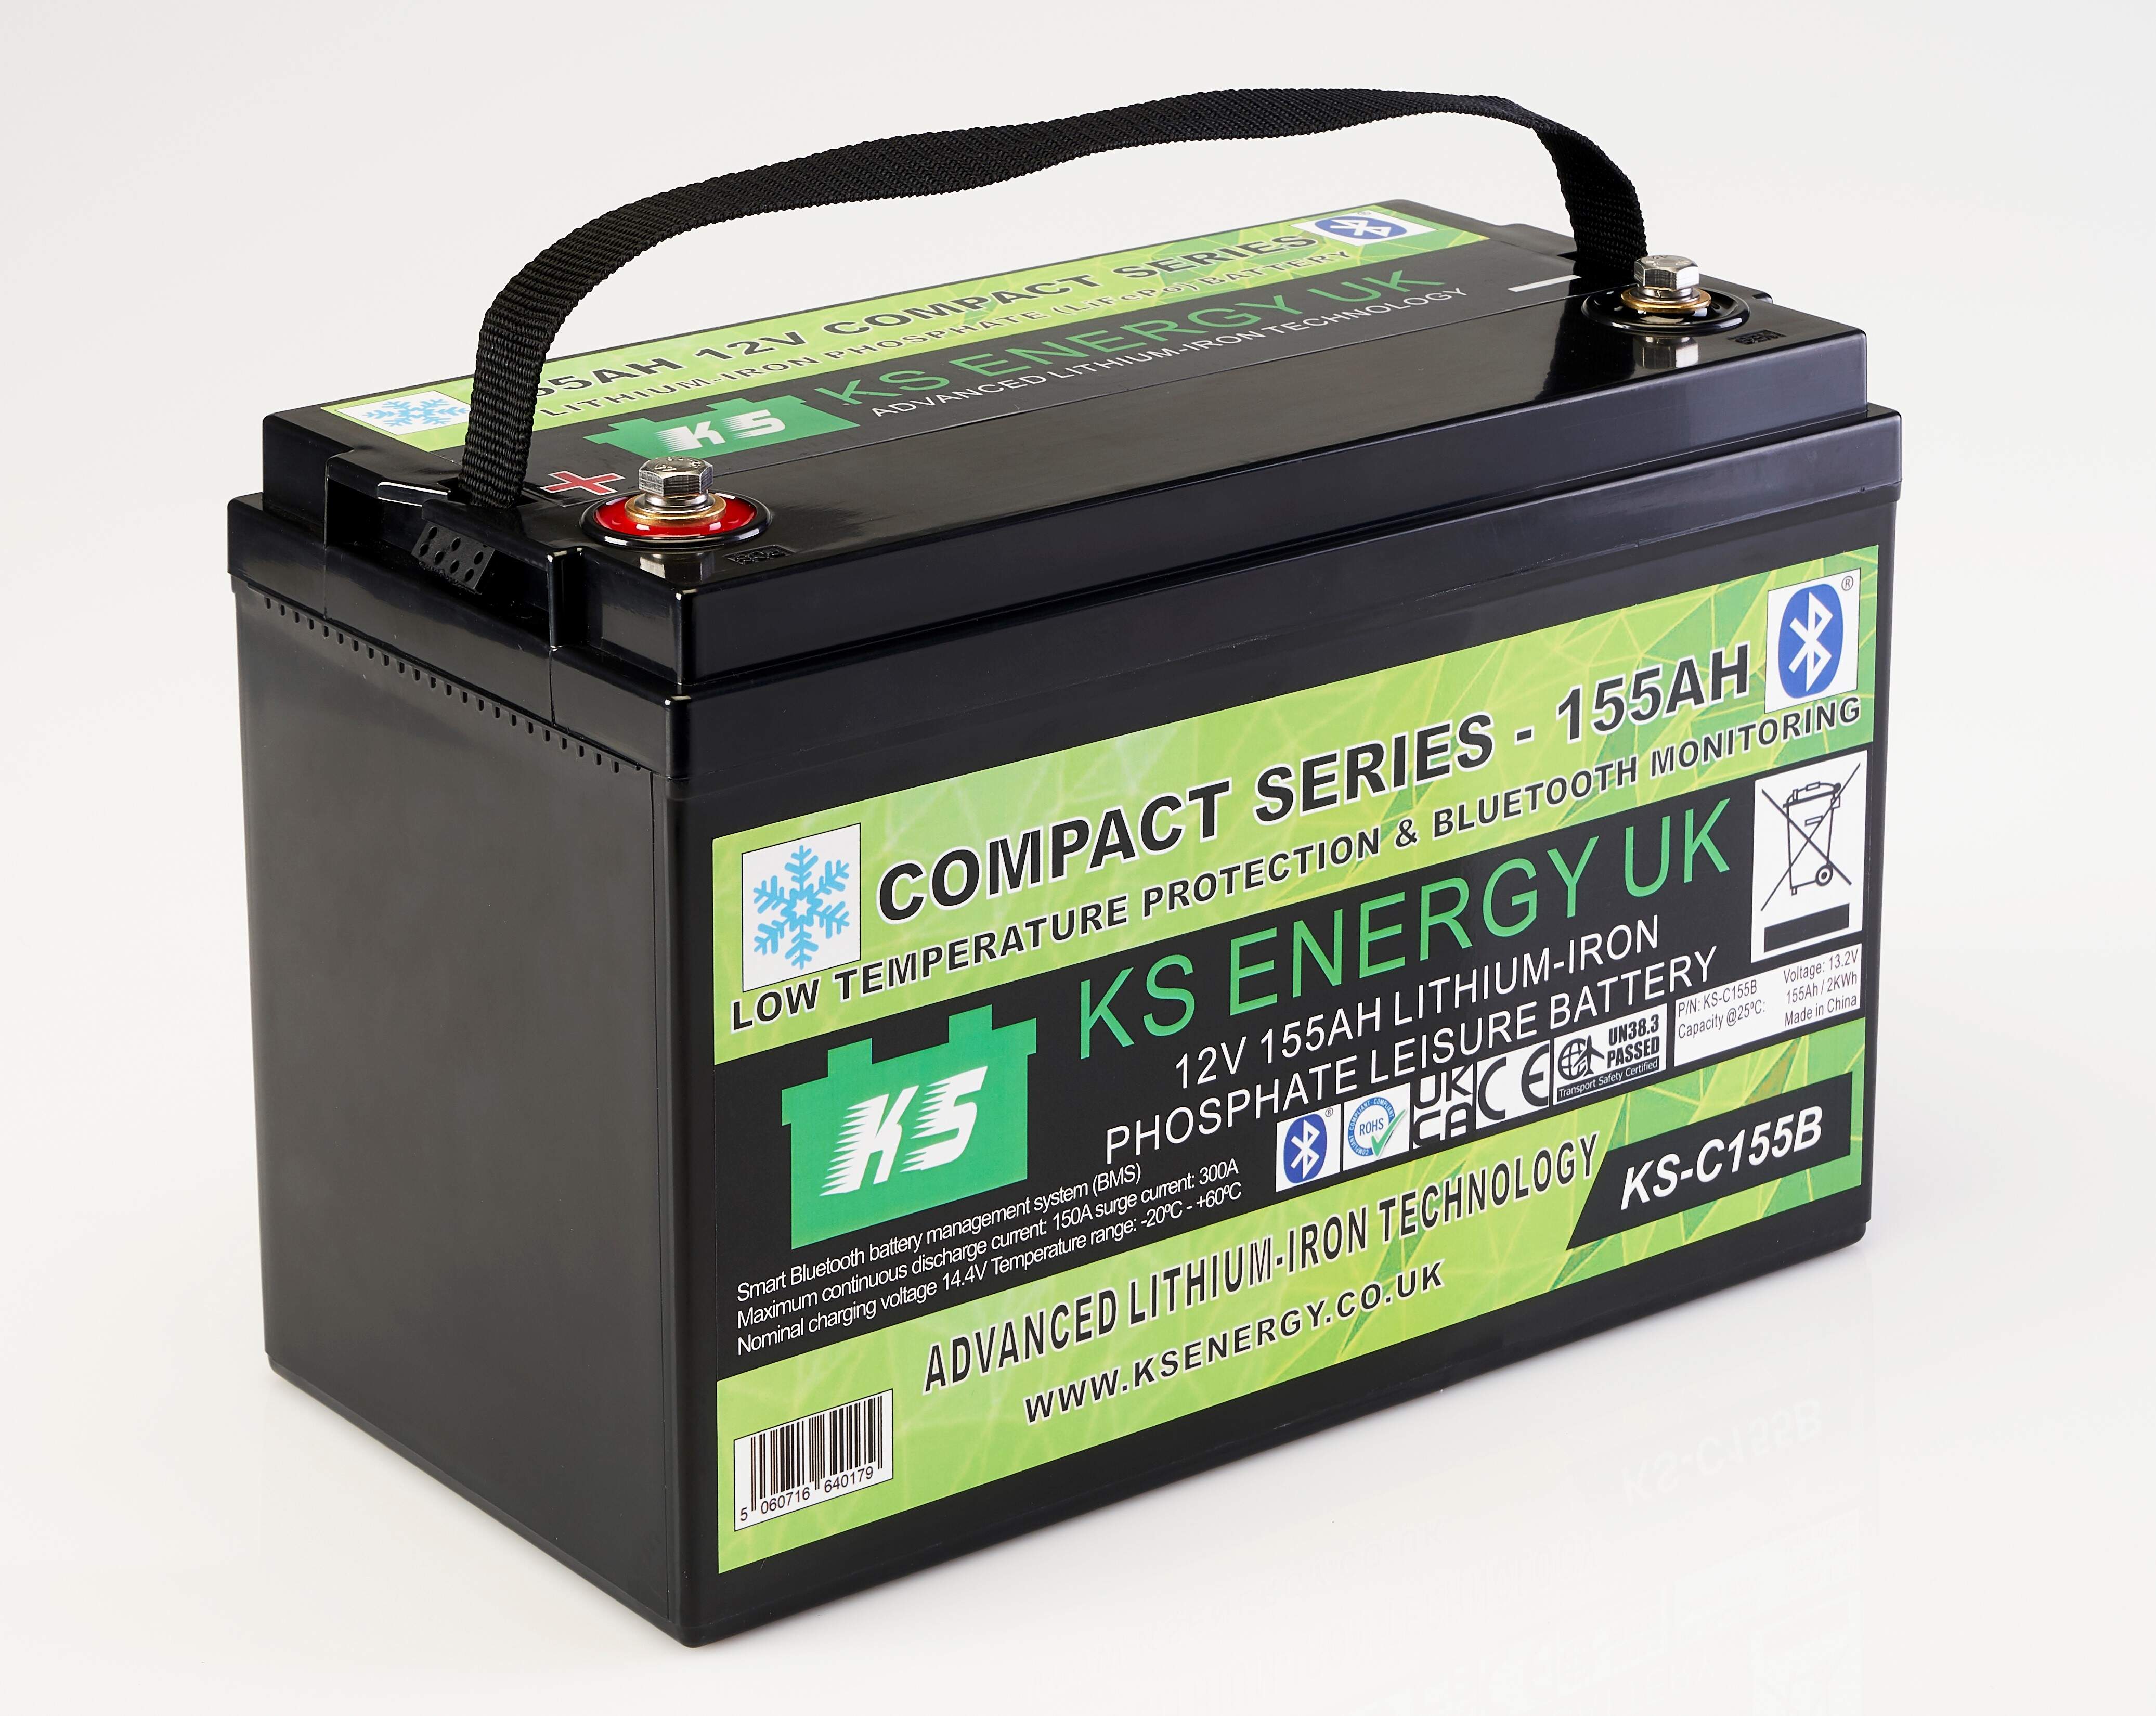 4a): KS-C155B 12v 155AH Compact Series Bluetooth High Power lithium leisure battery